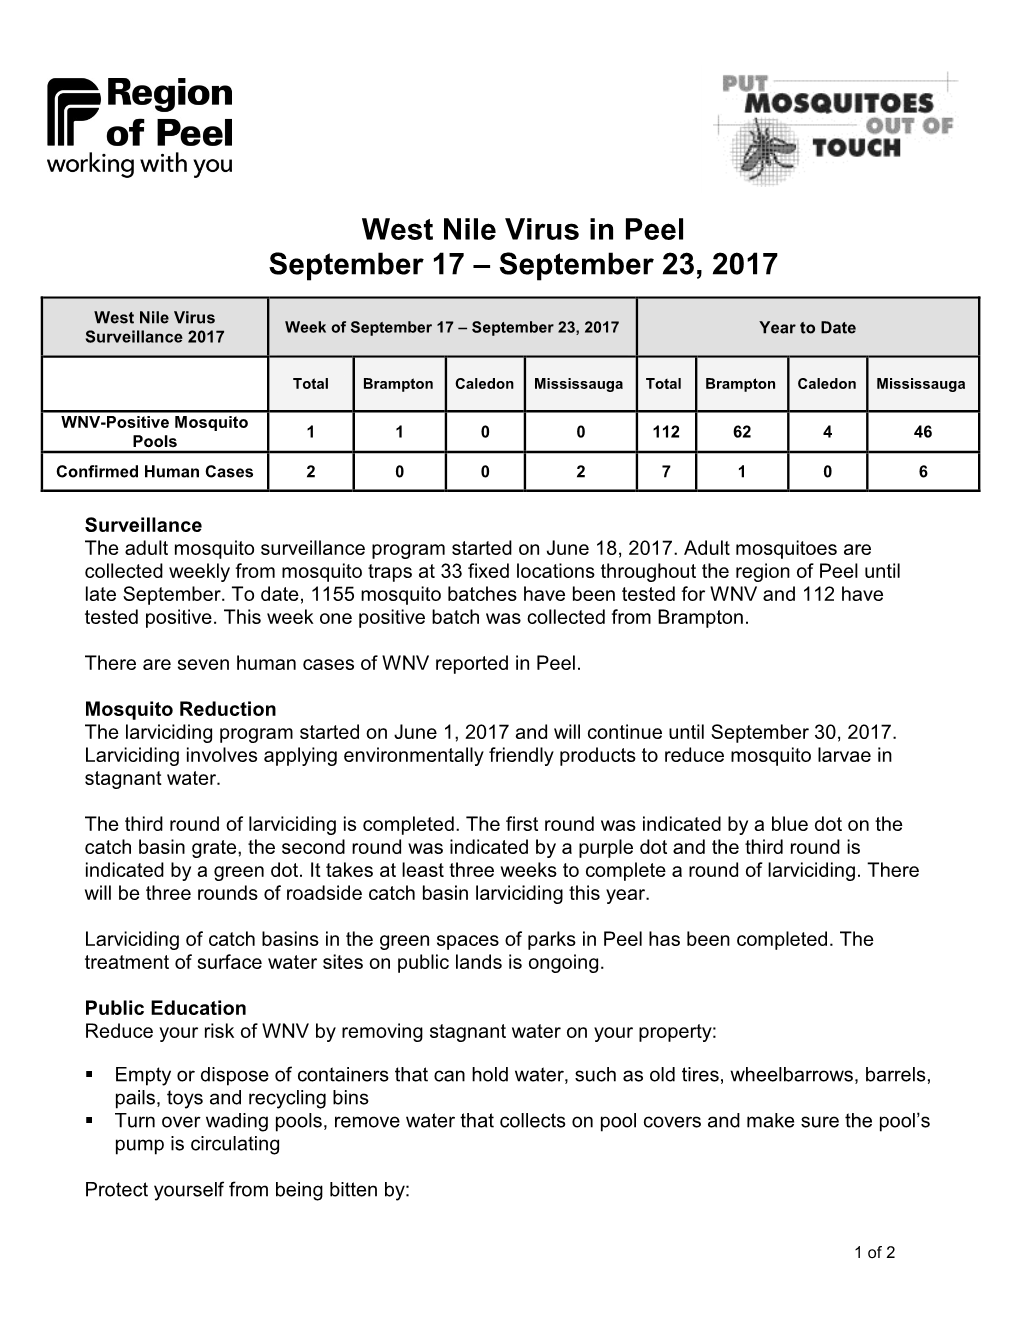 West Nile Virus in Peel Update